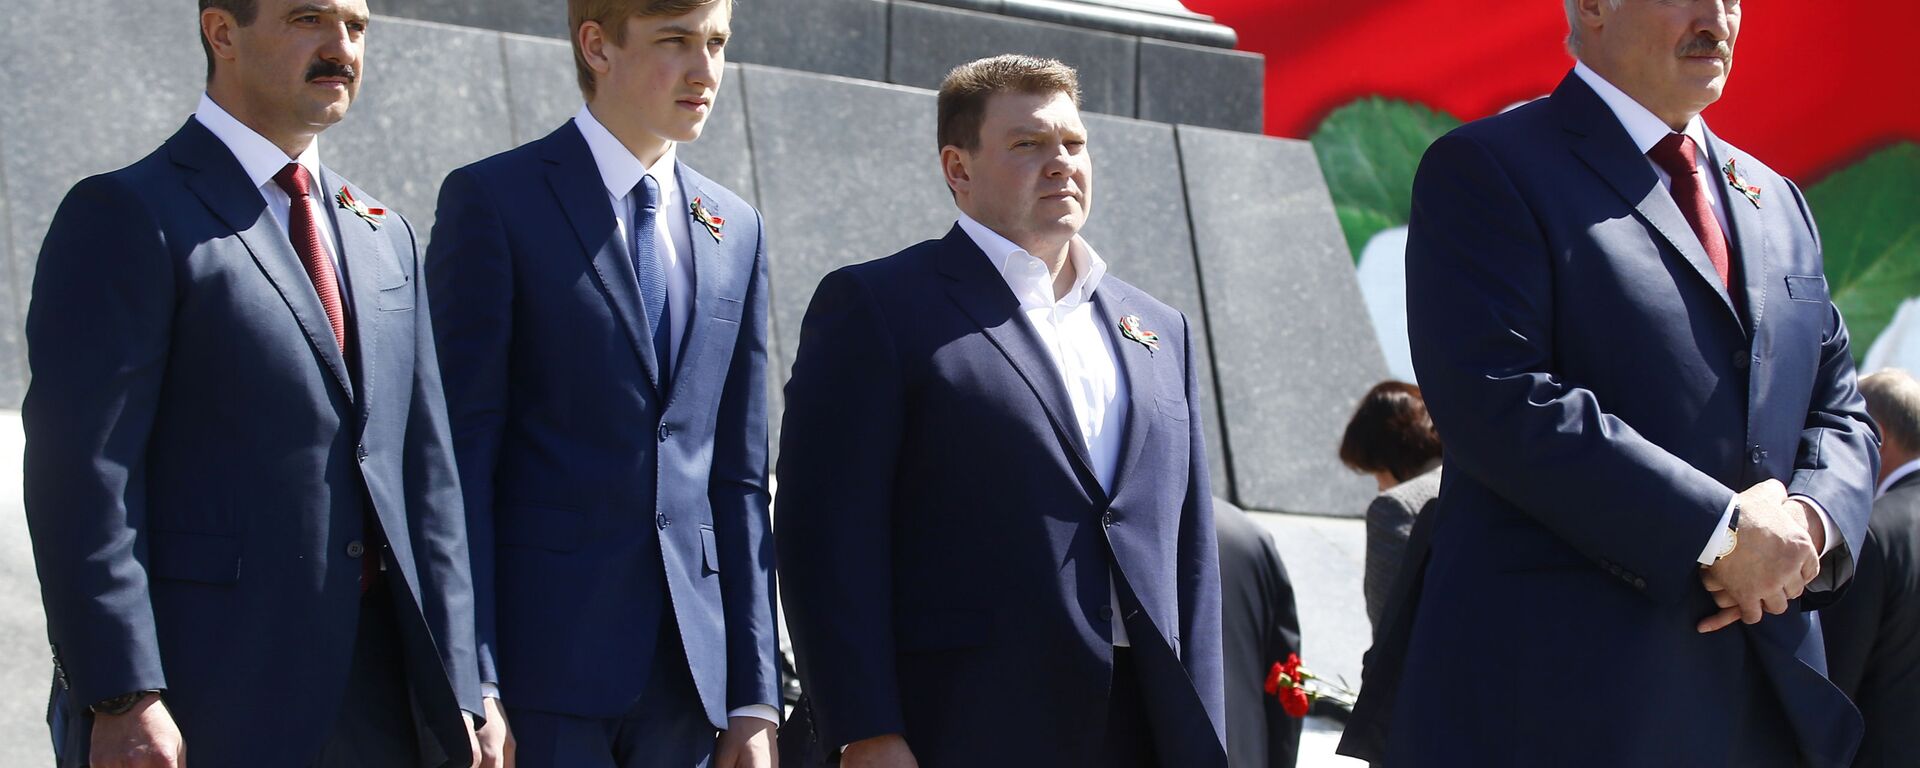 Президент Белоруссии Александр Лукашенко (справа) со своими сыновьями Виктором, Николаем и Дмитрием (слева направо) - Sputnik Таджикистан, 1920, 26.02.2021